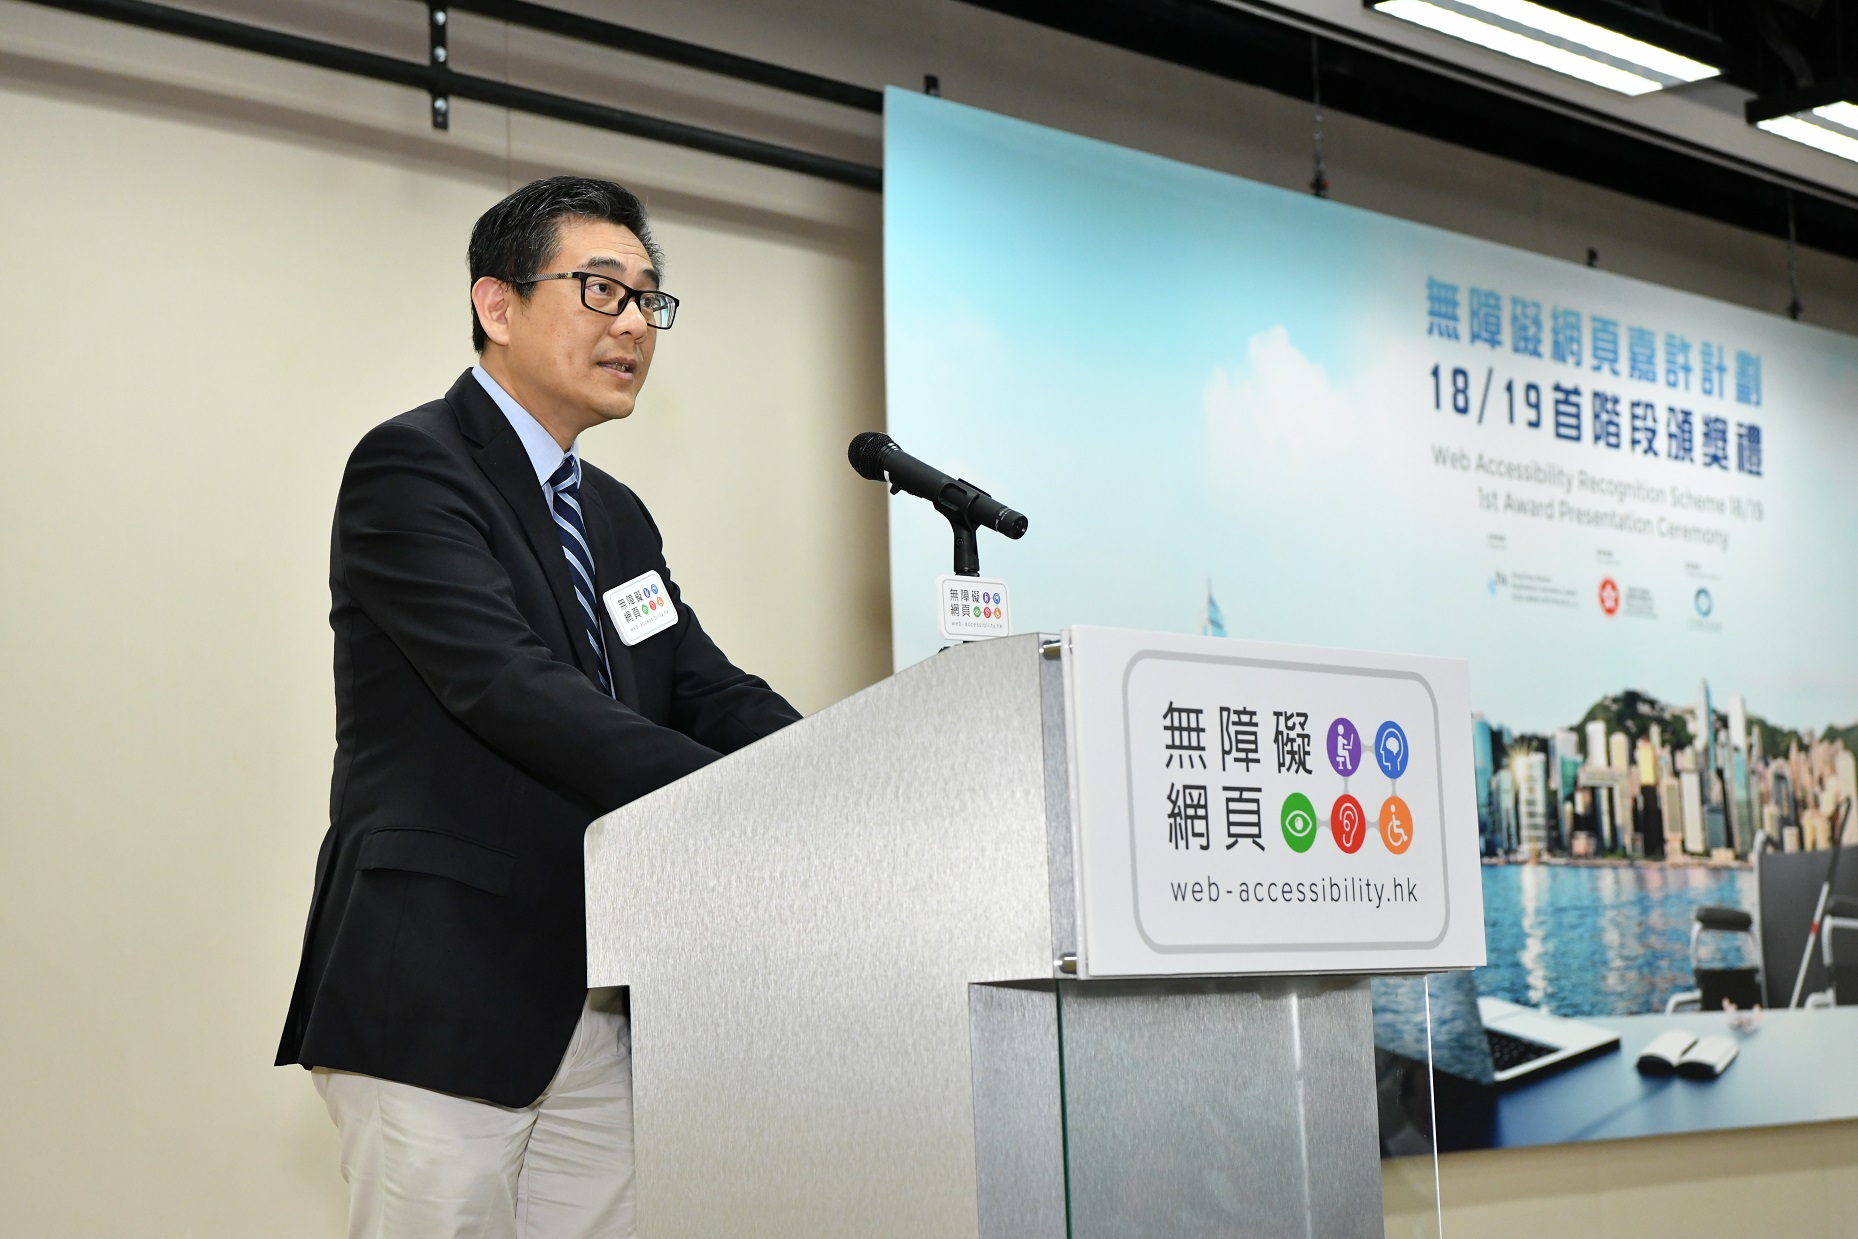 政府资讯科技总监杨德斌先生于「无障碍网页嘉许计划」18/19首阶段颁奖礼致辞。